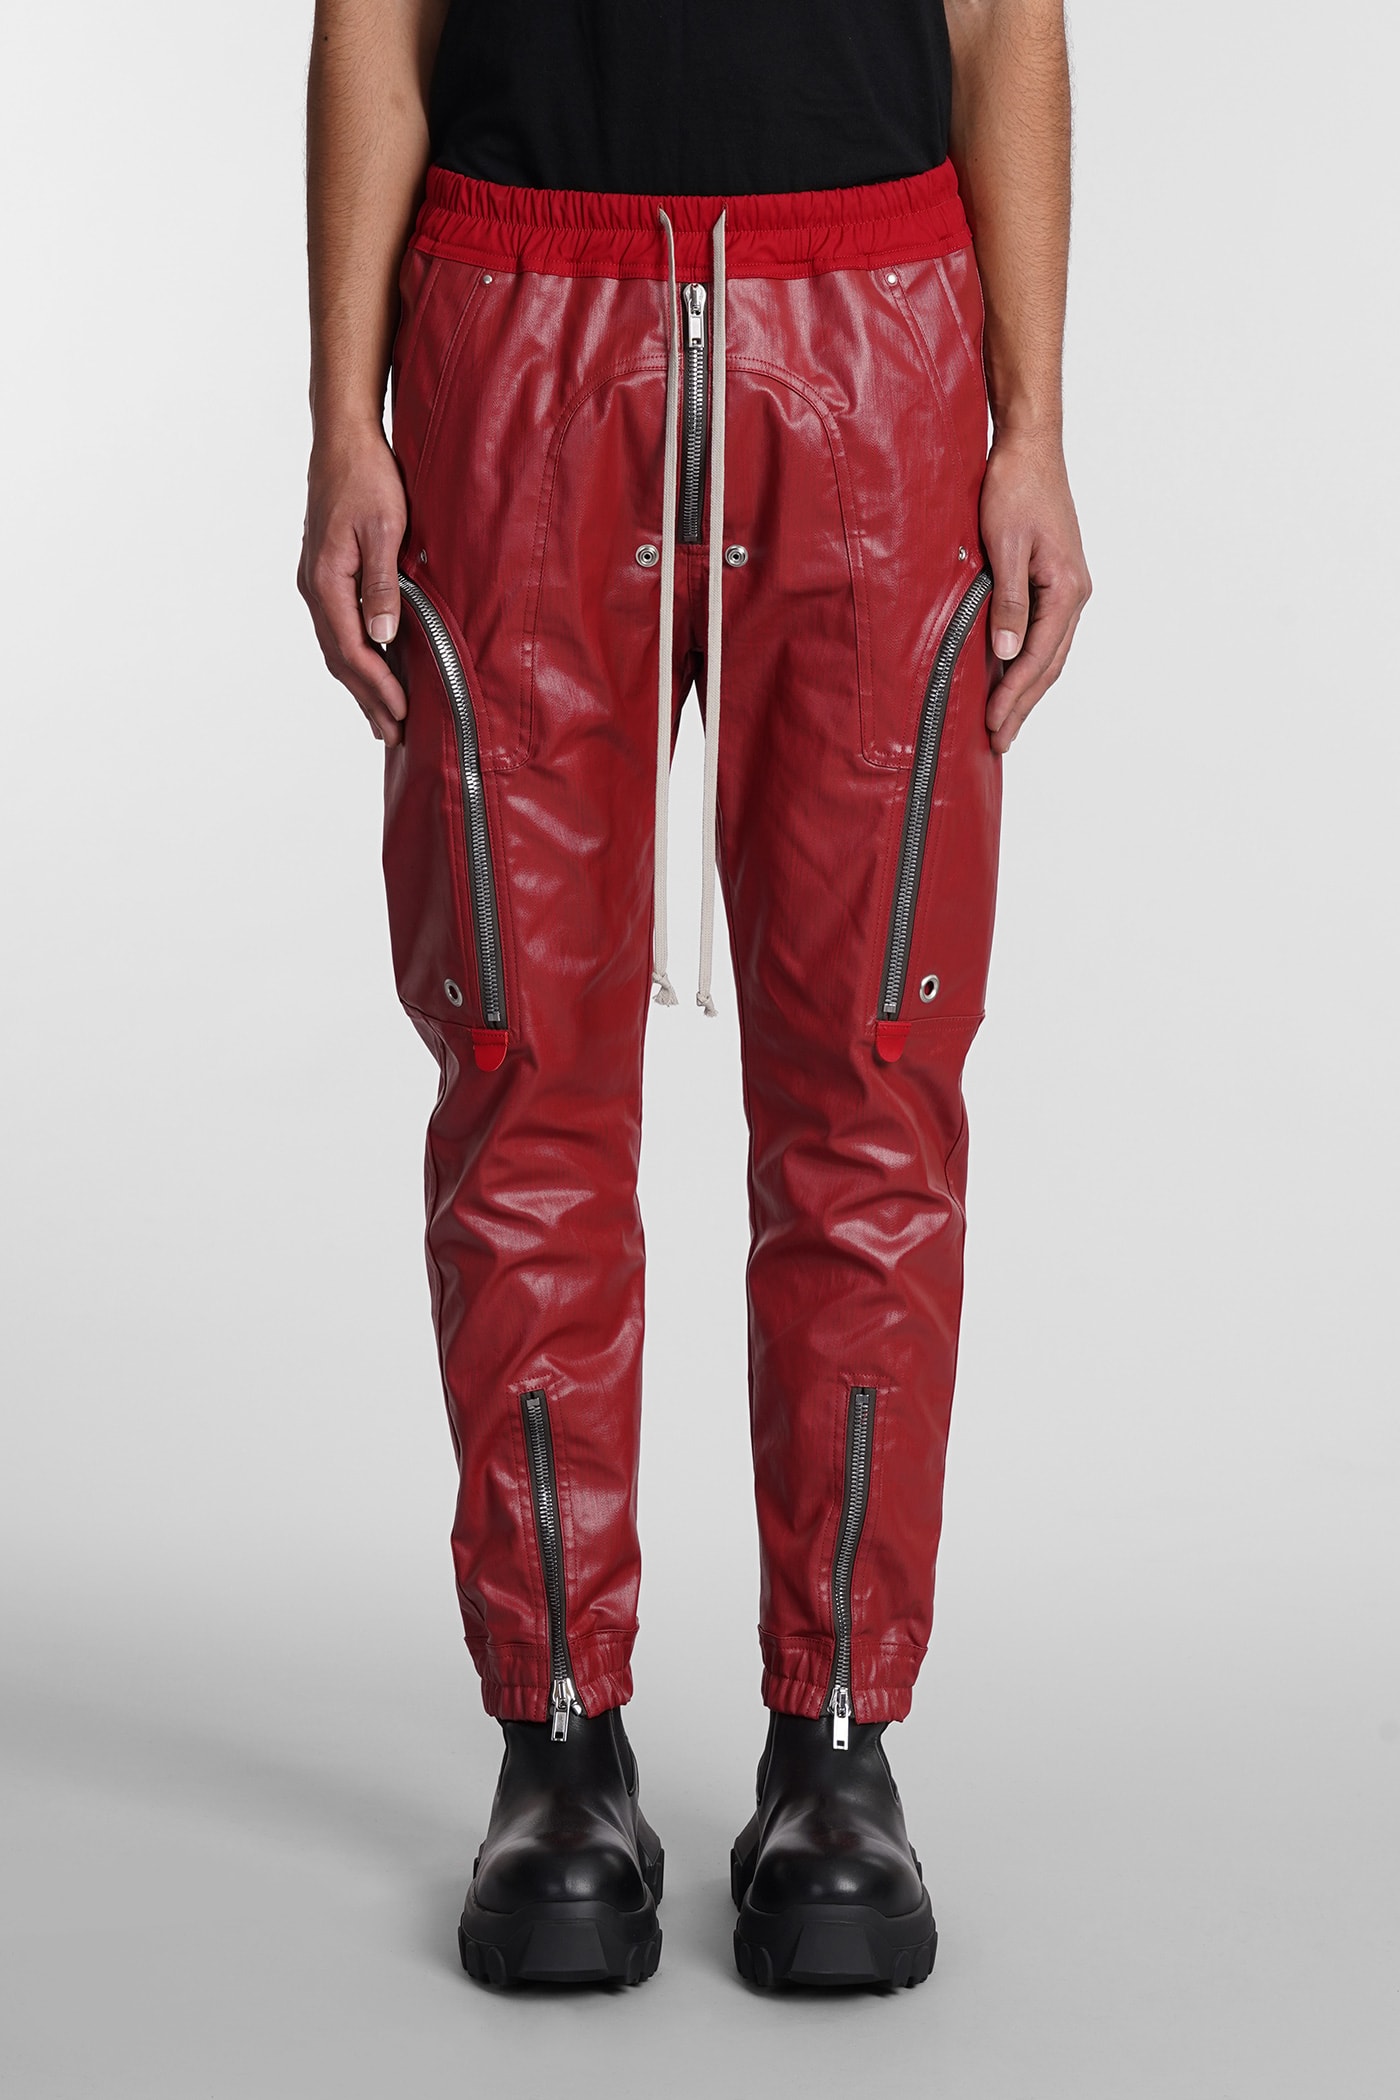 Bauhaus Cargo Pants In Red Cotton